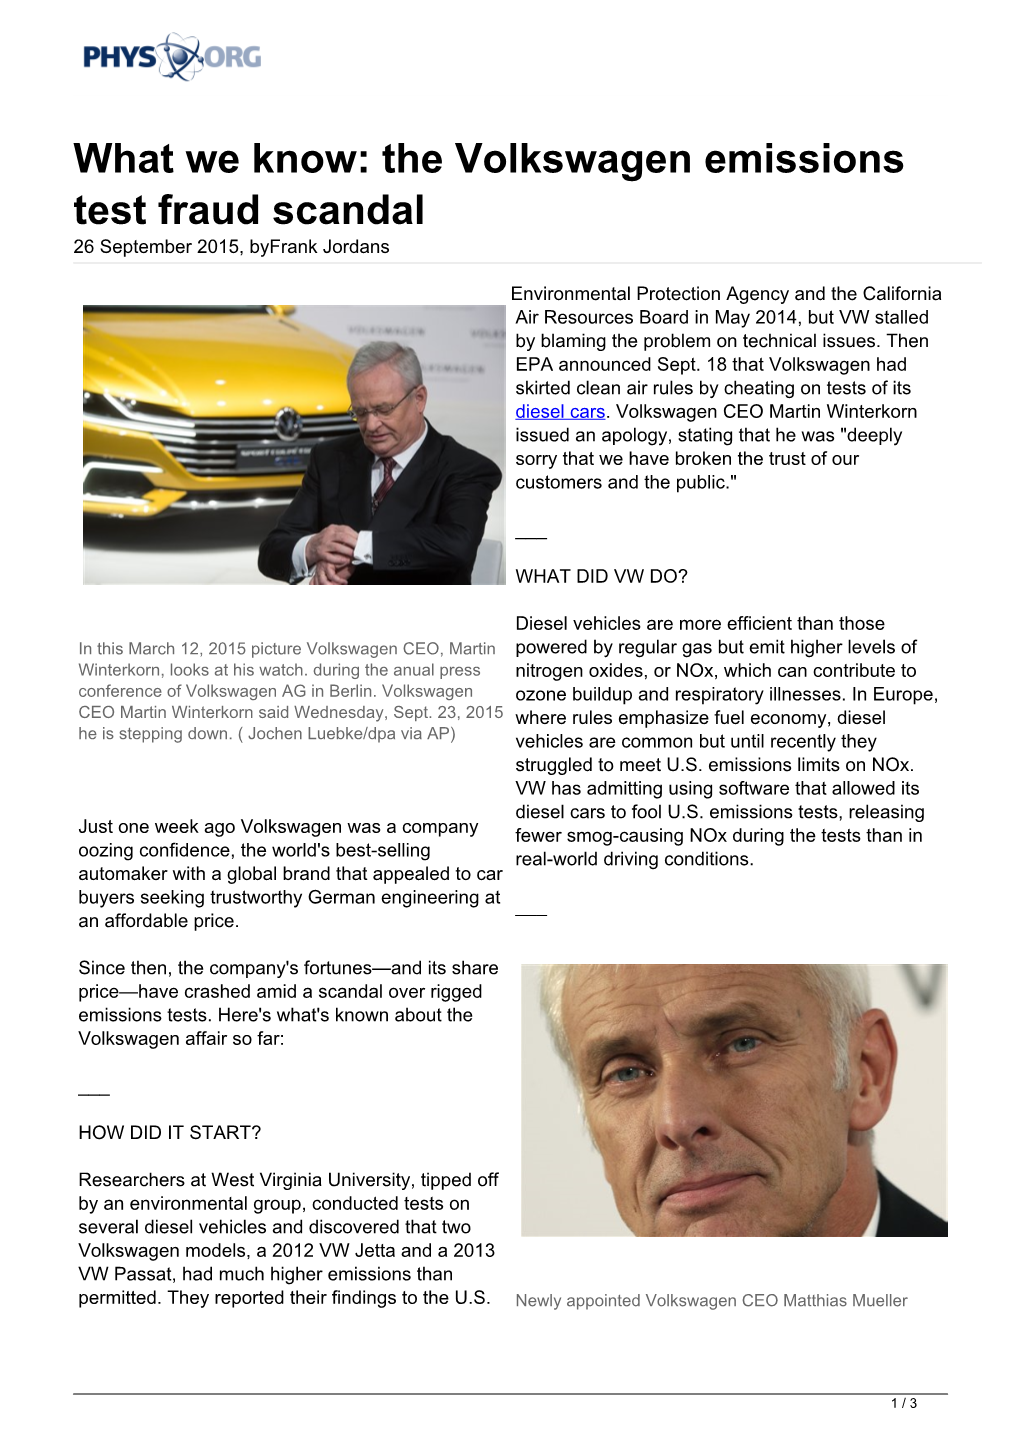 What We Know: the Volkswagen Emissions Test Fraud Scandal 26 September 2015, Byfrank Jordans